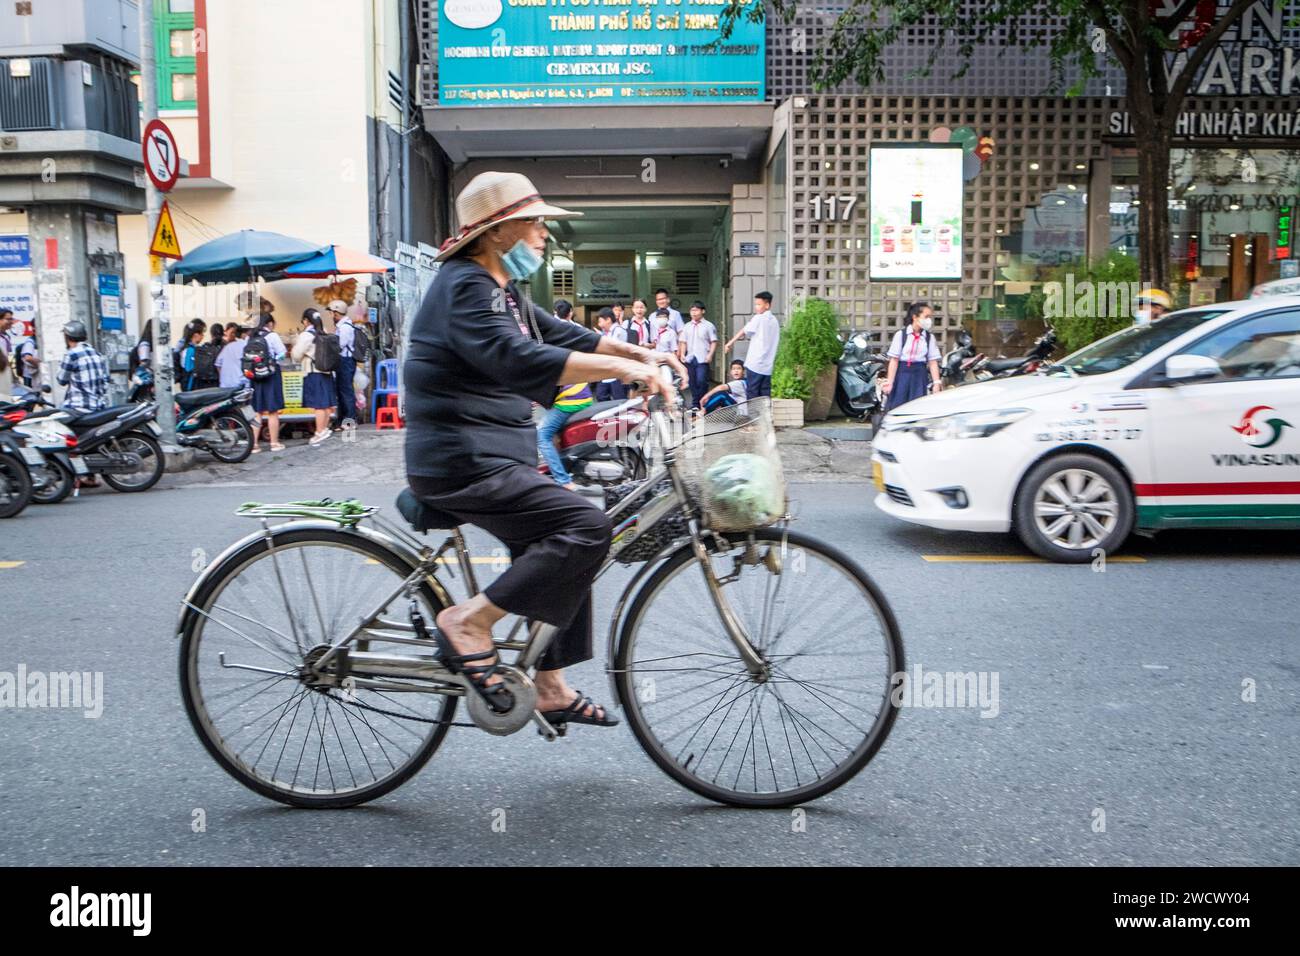 Vietnam, Ho Chi Minh ville, Saigon, la vie quotidienne Banque D'Images